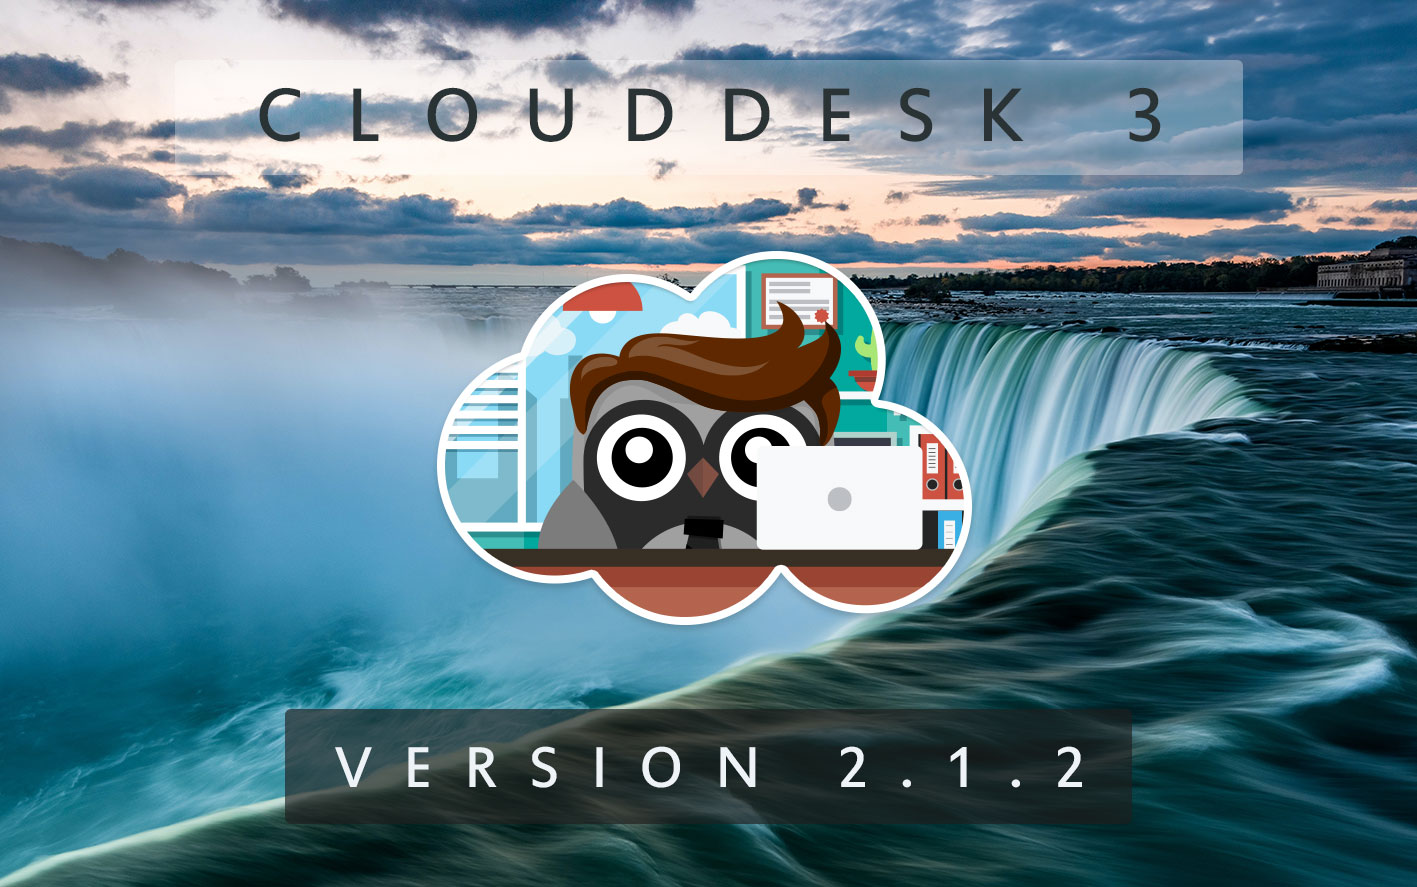 Cloud Desk 3 - Version 2.1.2